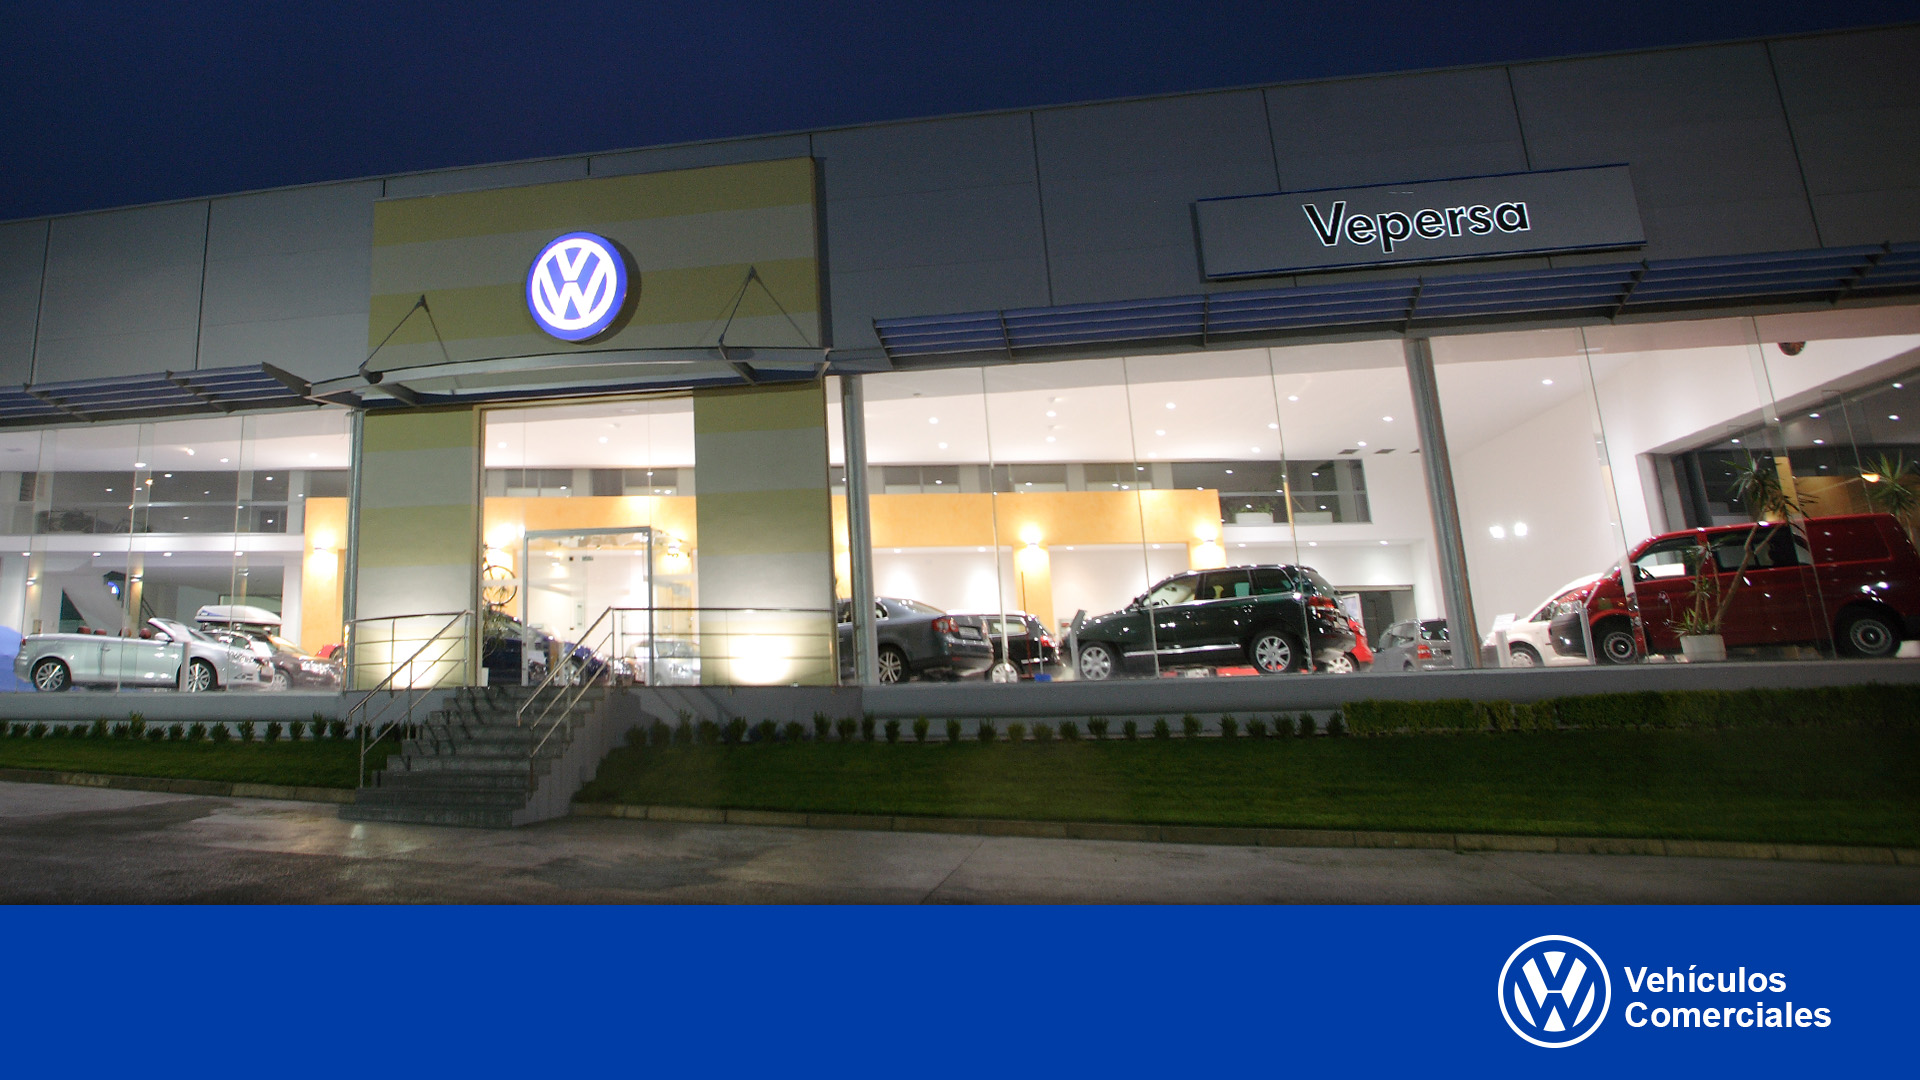 Vepersa Pontevedra Volkswagen Comerciales